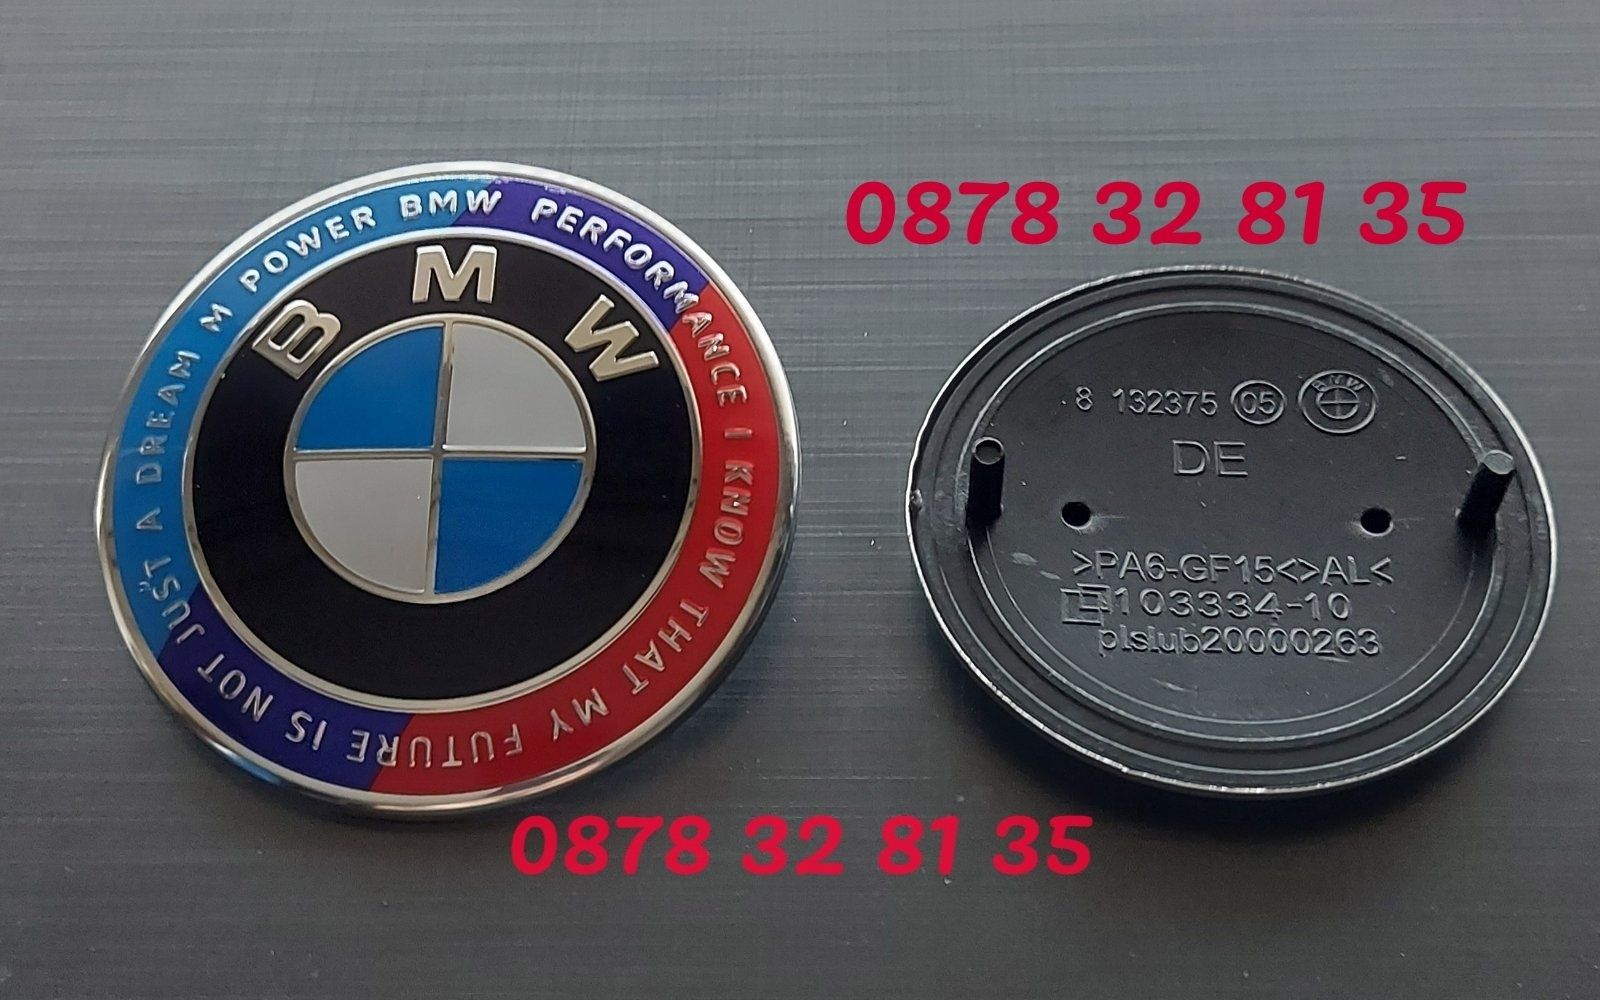 Юбилейни емблеми и капачки за джанти за БМВ/BMW със слоган